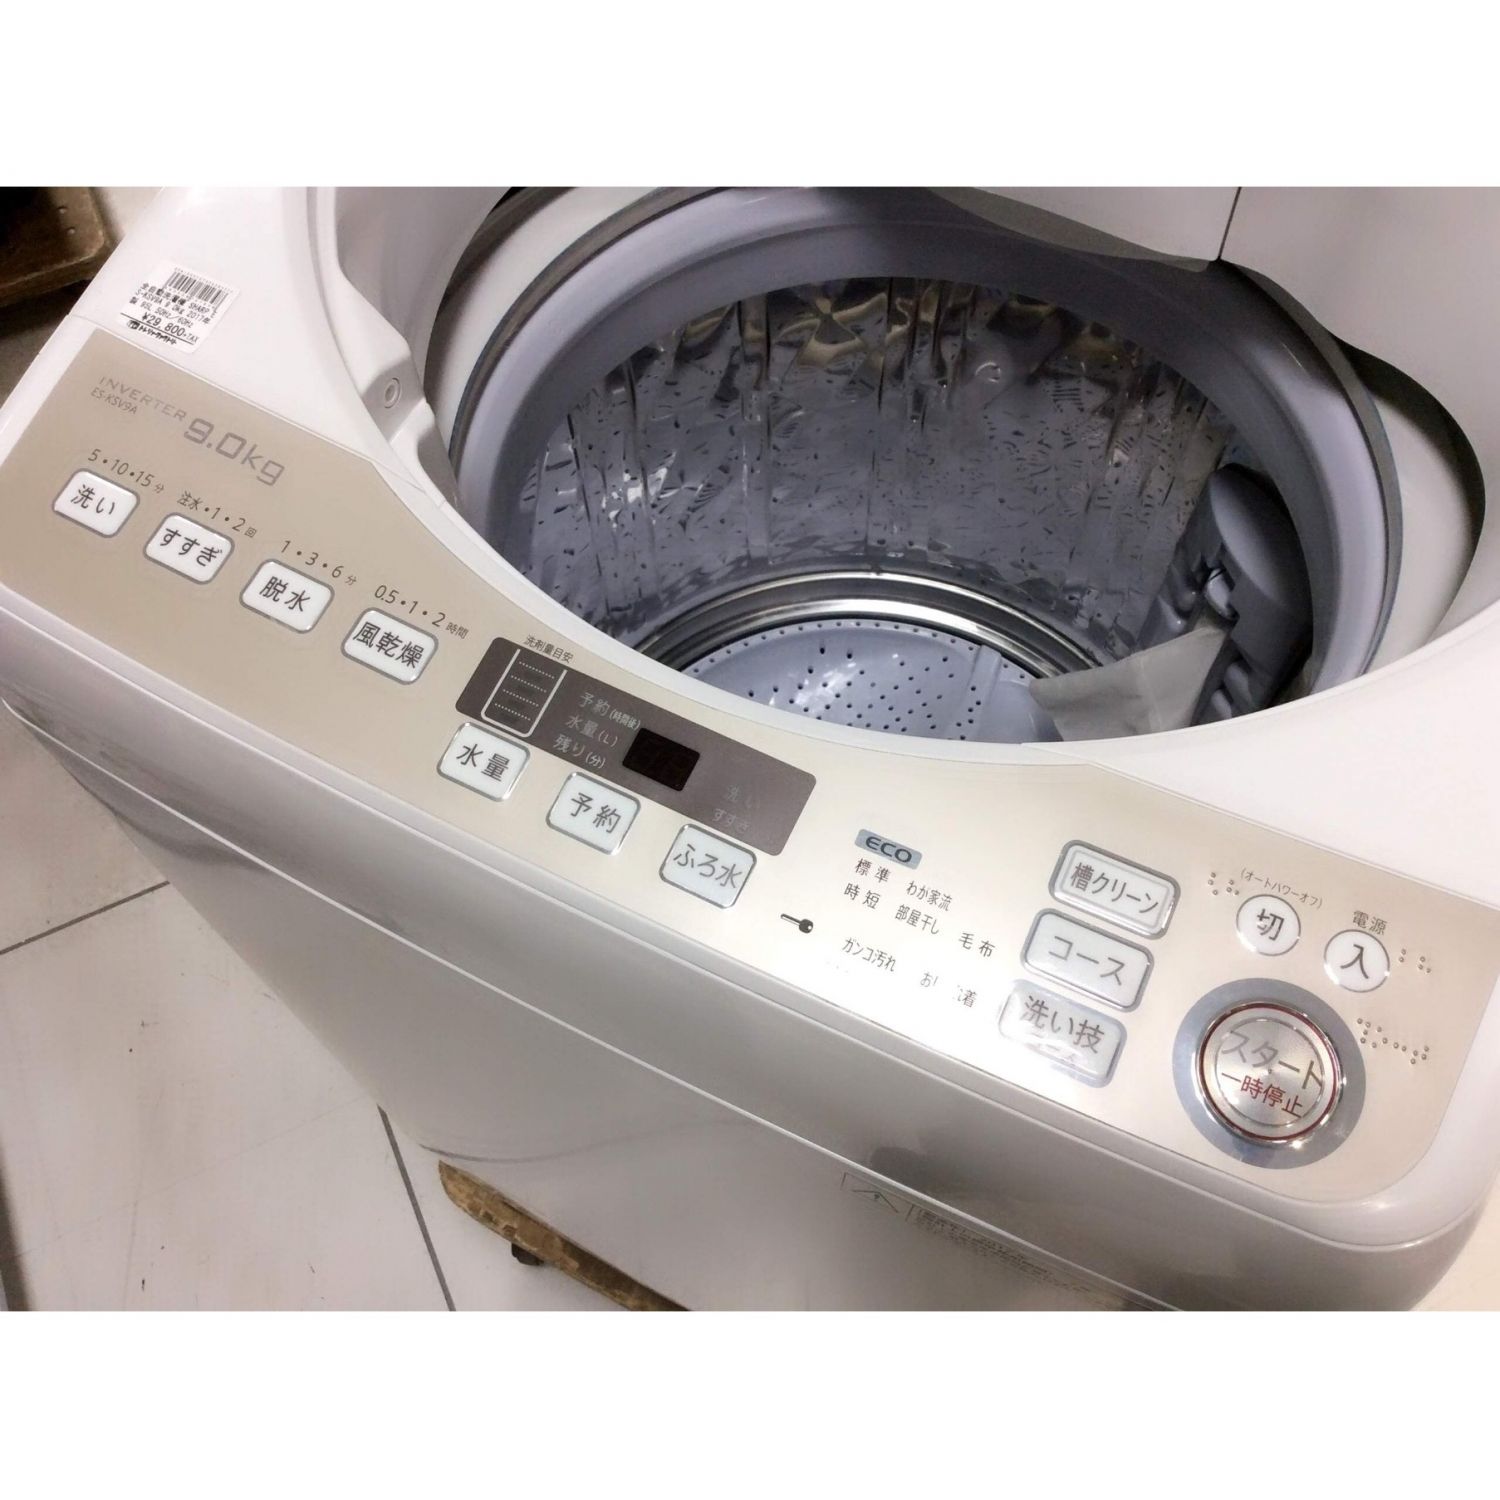 SHARP 洗濯機 ９㎏ ES-KSV9A インバーター制御 化学物質過敏症の方に 